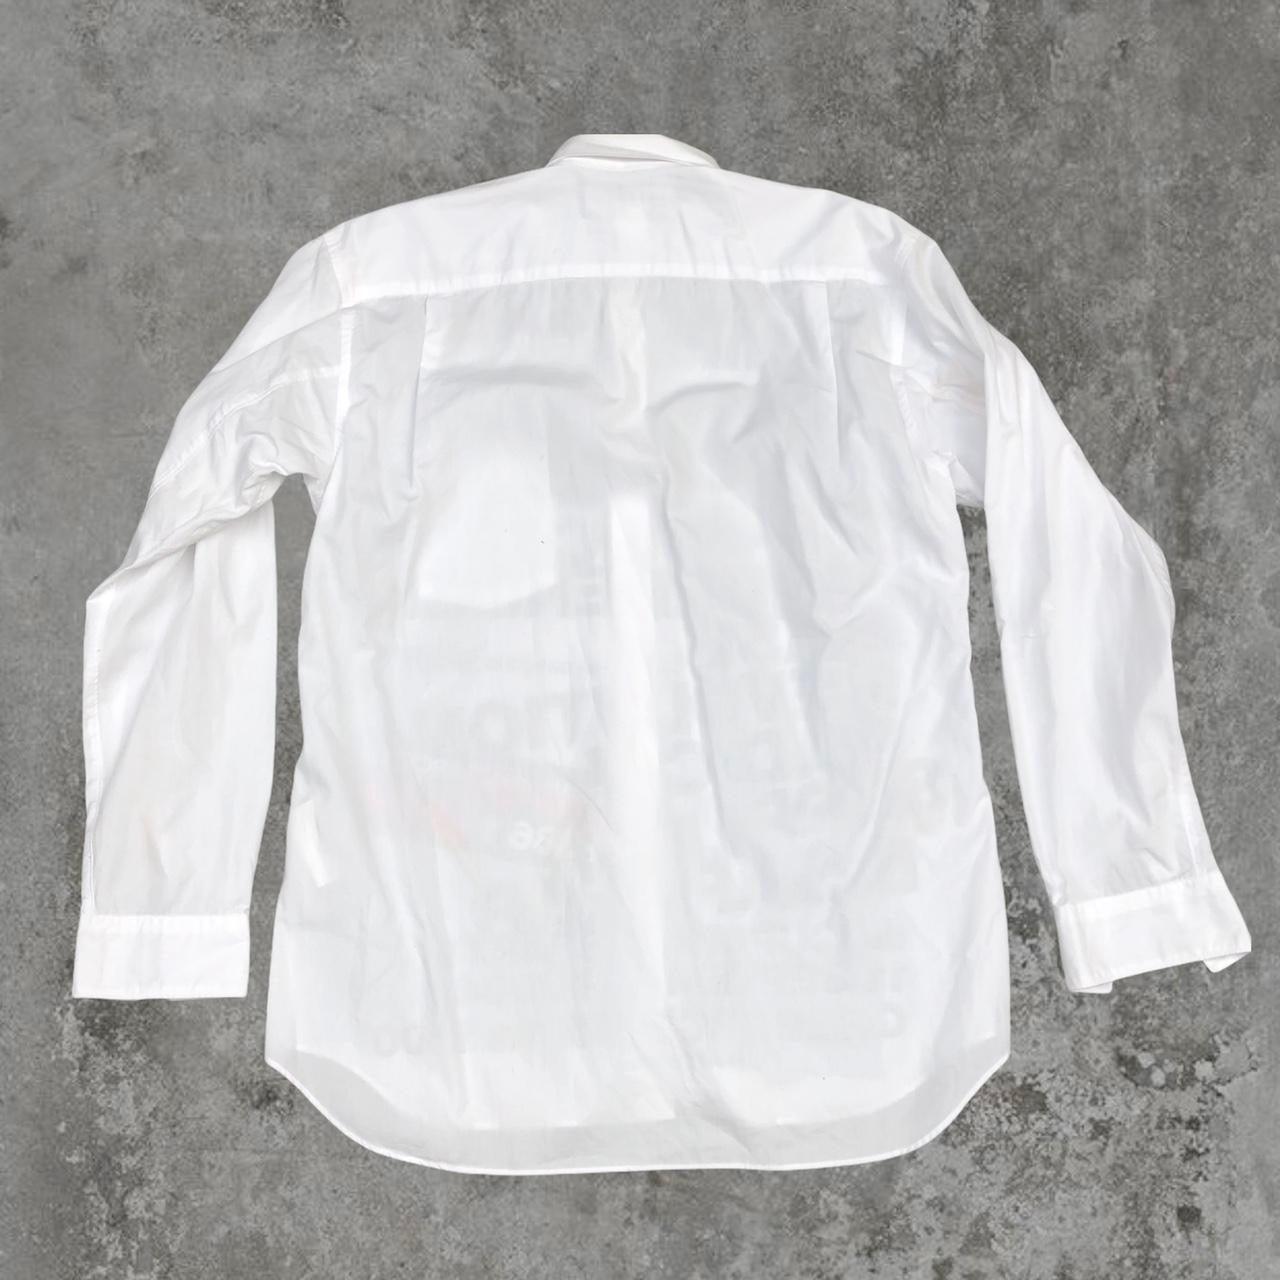 Comme des Garçons x Guerrilla Store Graphic White Shirt - Known Source